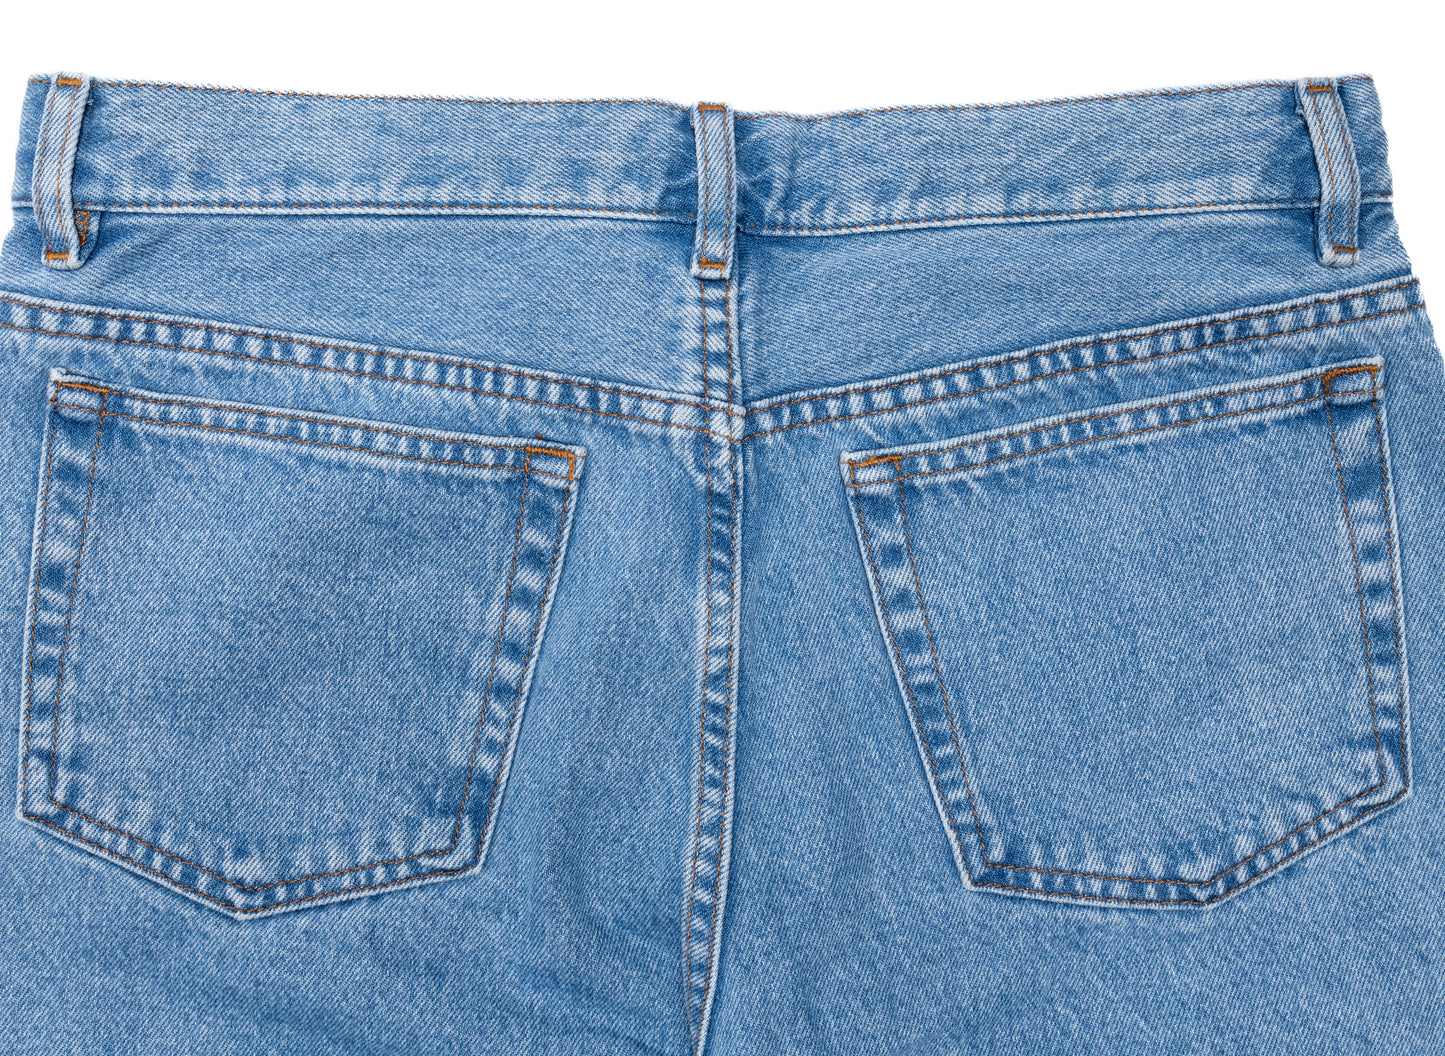 A.P.C. Petit New Standard Jeans